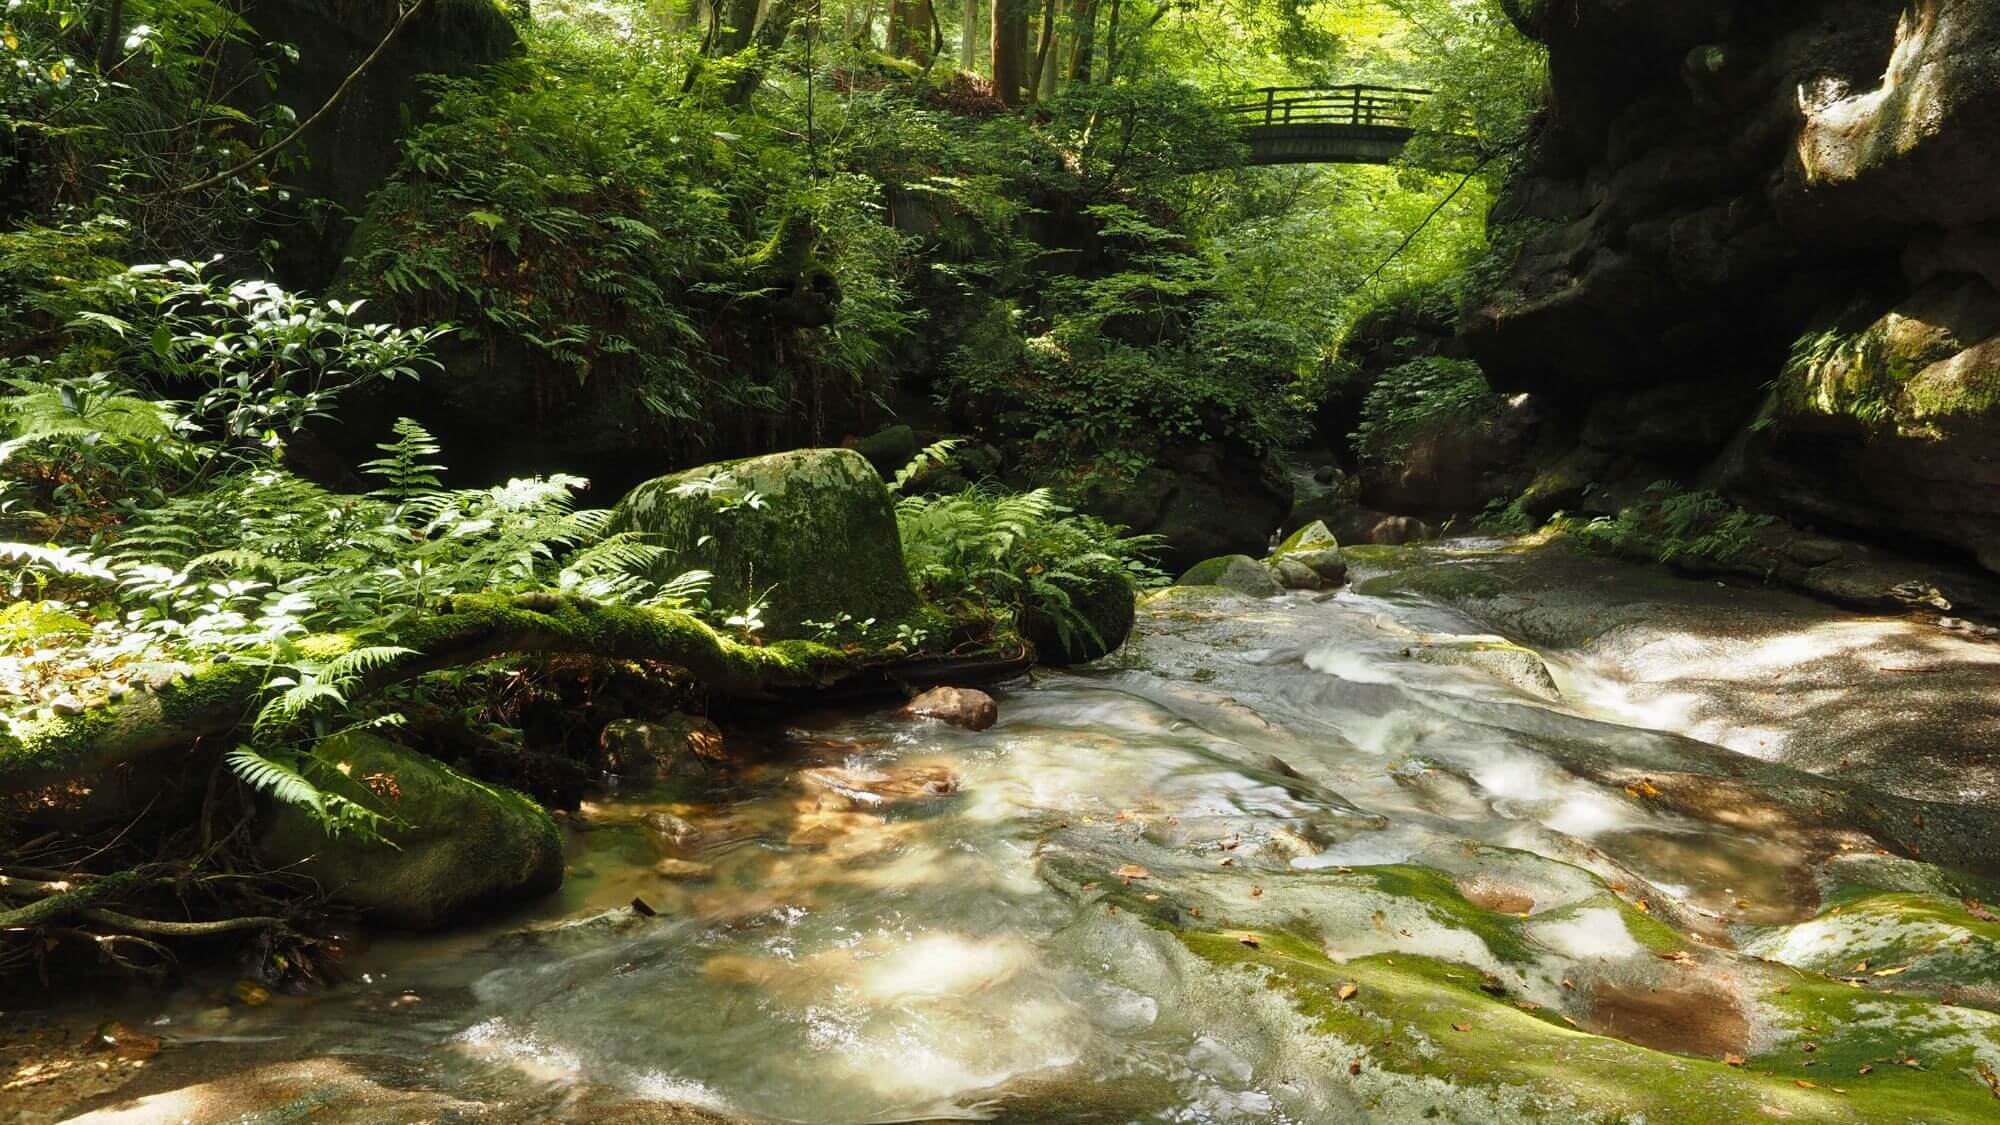 【荒川剣龍峡】（お車12分）五頭県立自然公園の北端、杉木立や広葉樹を流れる美しい清流に癒されます。